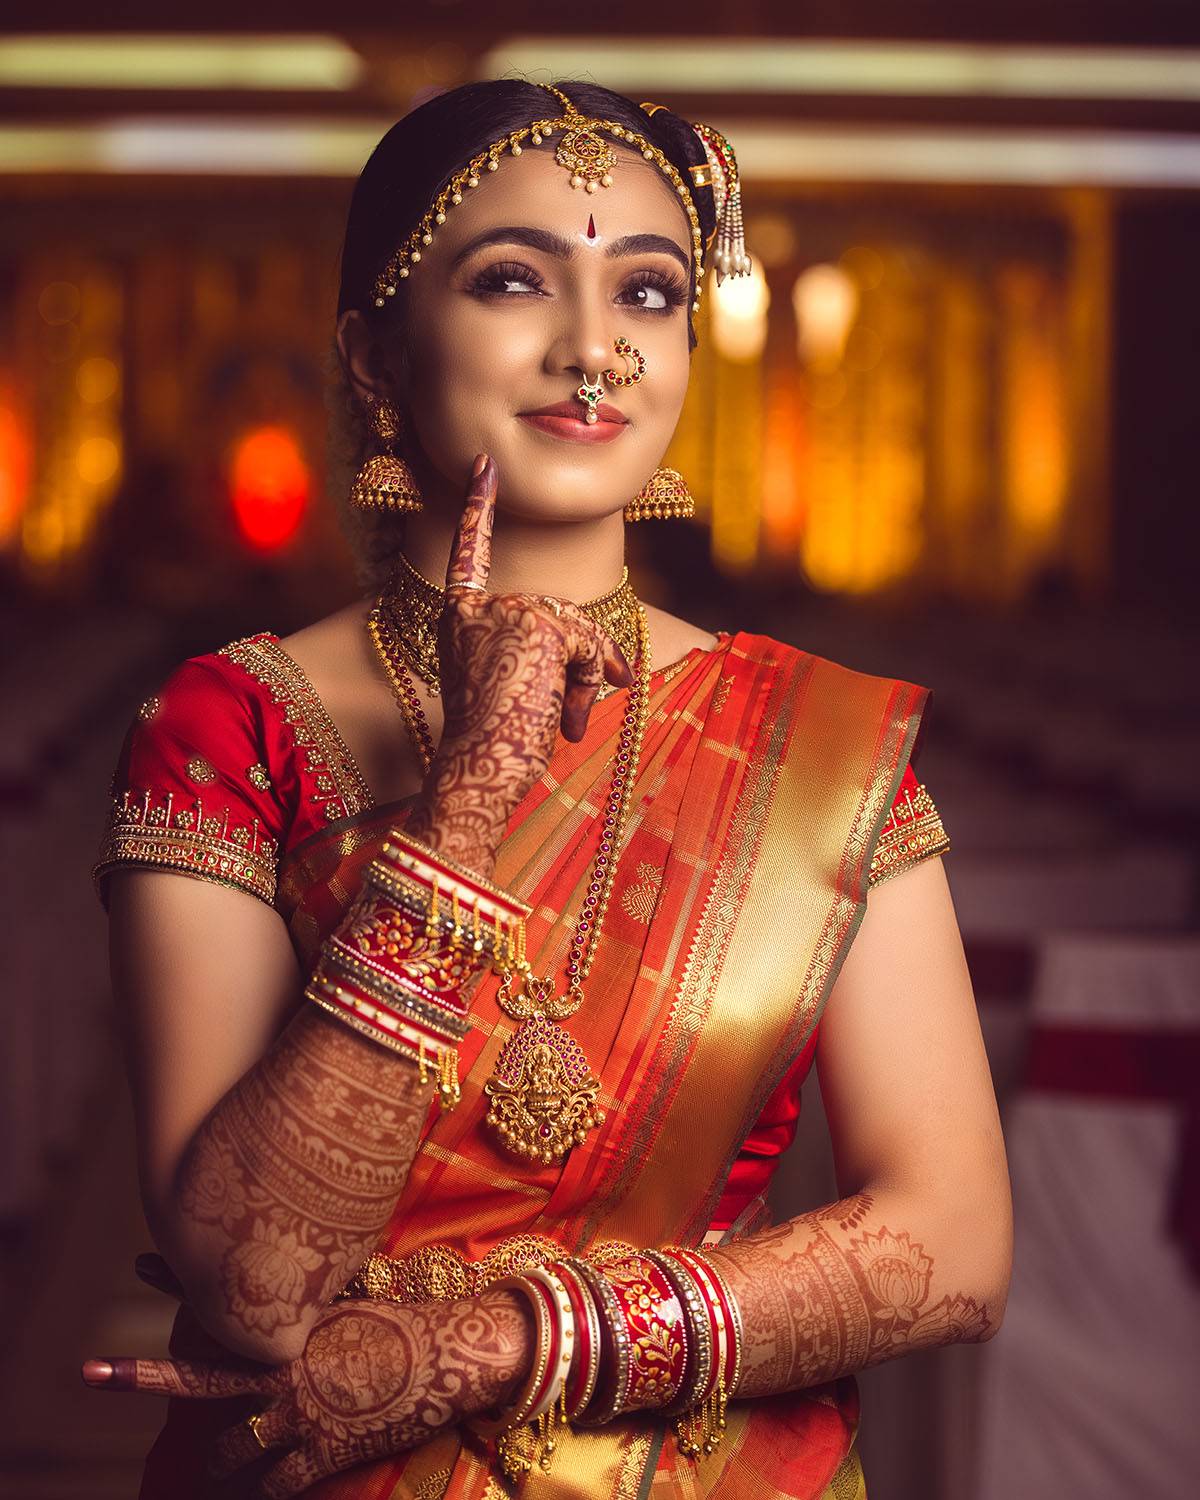 Top Wedding Photographers in Patna - Nkstudio.in